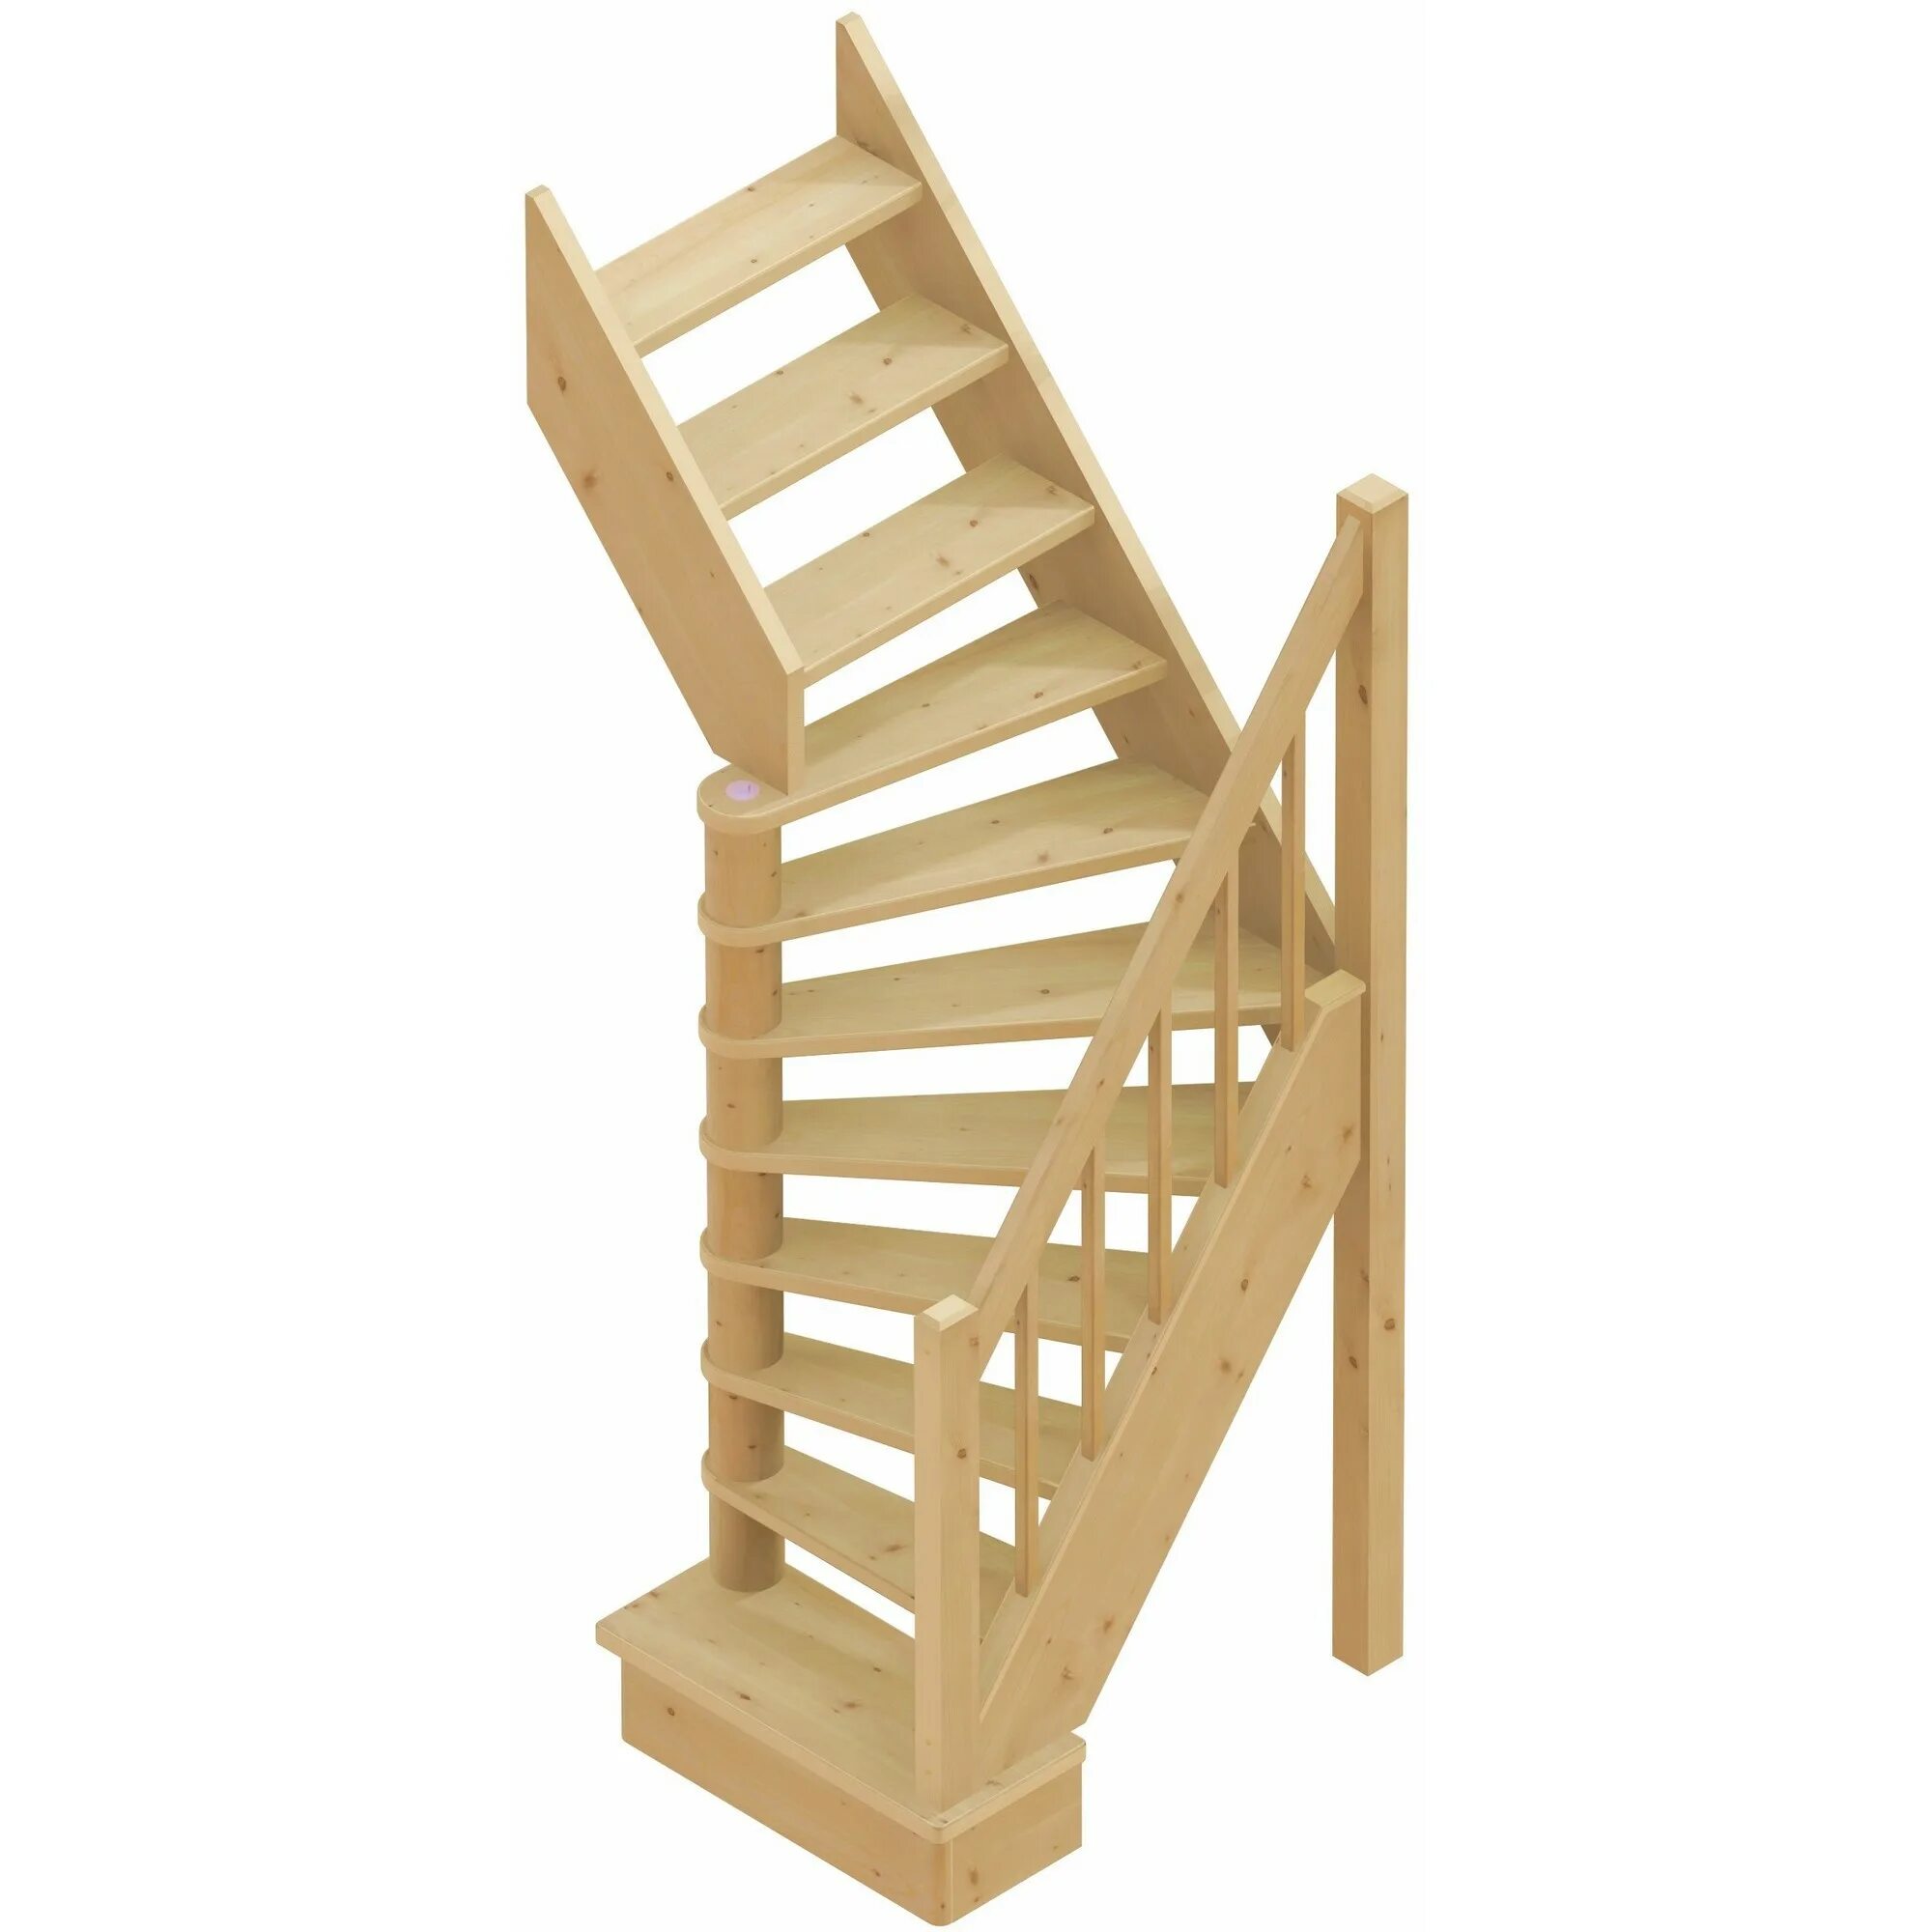 Лестница поворотная 90° лс-91. Лестница поворотная на 180° лс-01у, универсальная. Лестница поворотная 270° лес-12ву. Лестница лс-91м. Купить деревянную лестницу в леруа мерлен